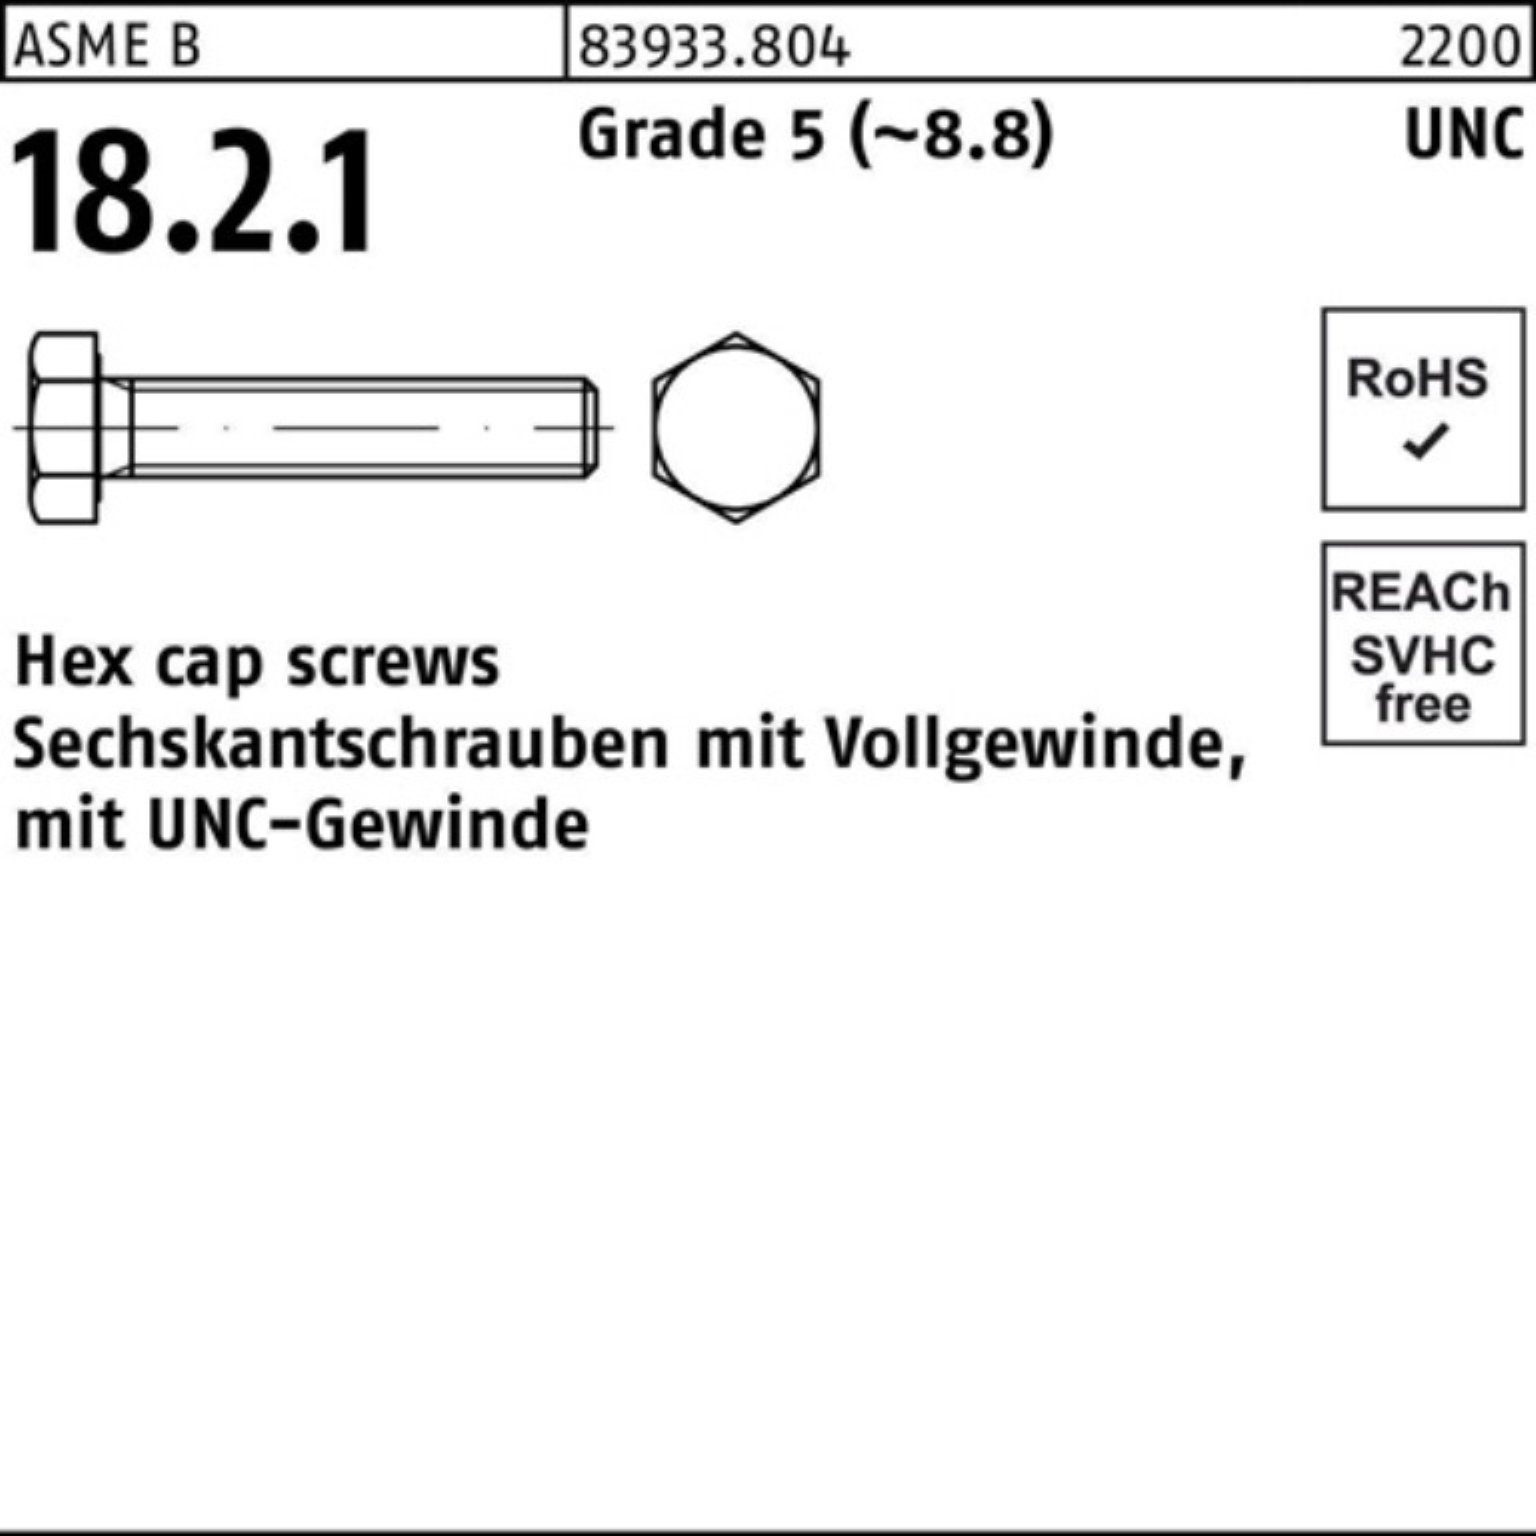 Reyher Sechskantschraube 100er Pack Sechskantschraube R 83933 UNC-Gewinde VG 3/4x 1 1/4 Grade 5